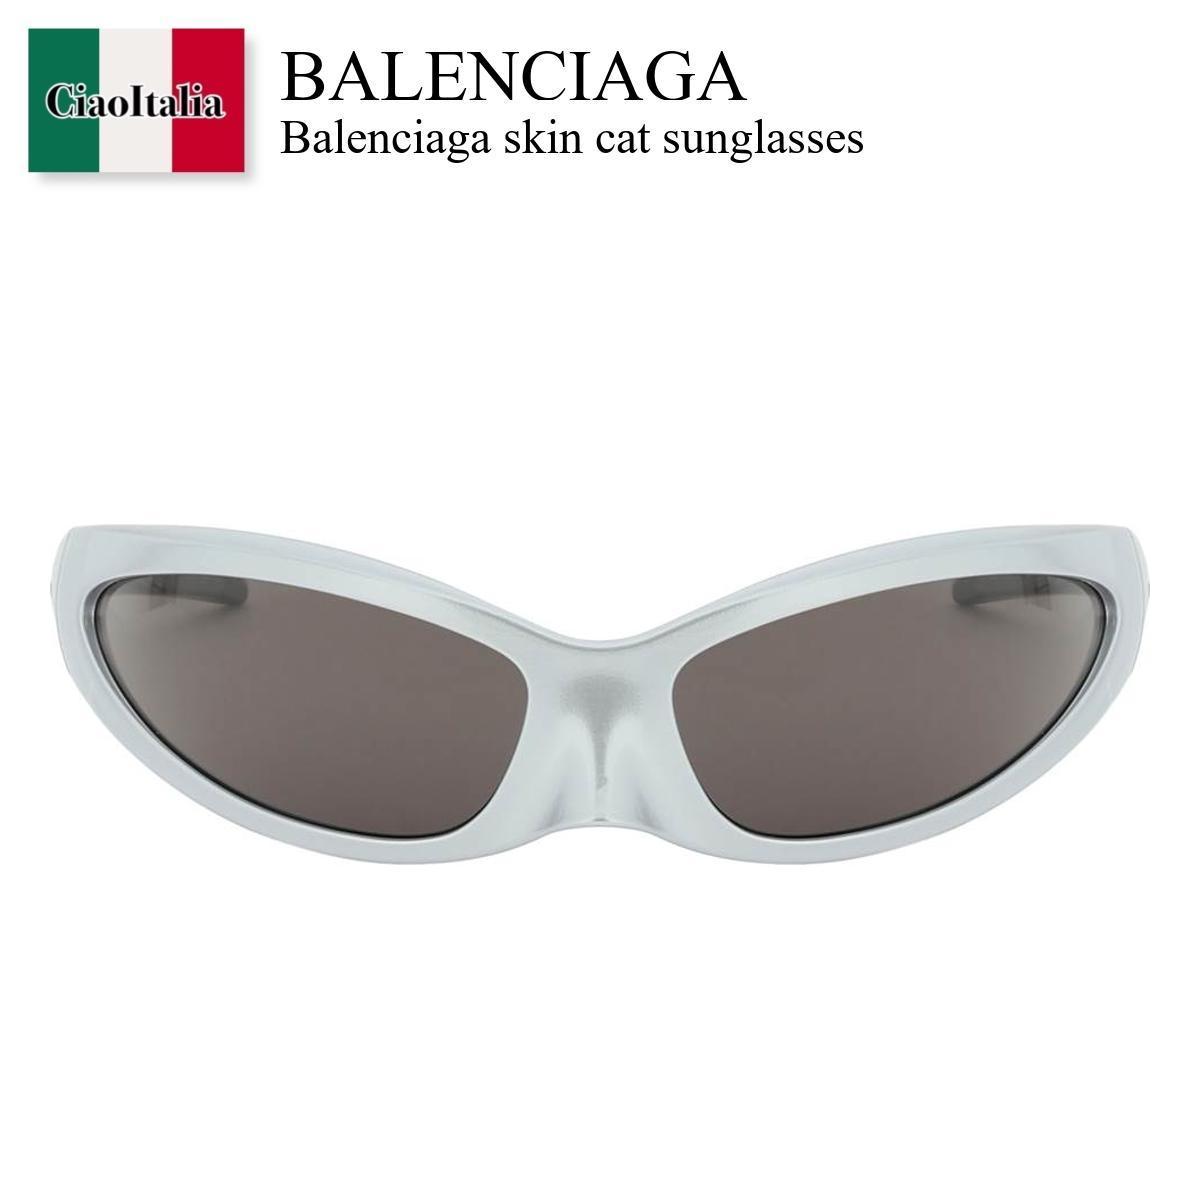 バレンシアガ サングラス レディース バレンシアガ / Balenciaga Skin Cat Sunglasses / 718476 T0007 / 718476 T0007 1402 / 718476T00071402 / 718476T0007 / サングラス / 「正規品補償」「VIP価格販売」「お買い物サポート」